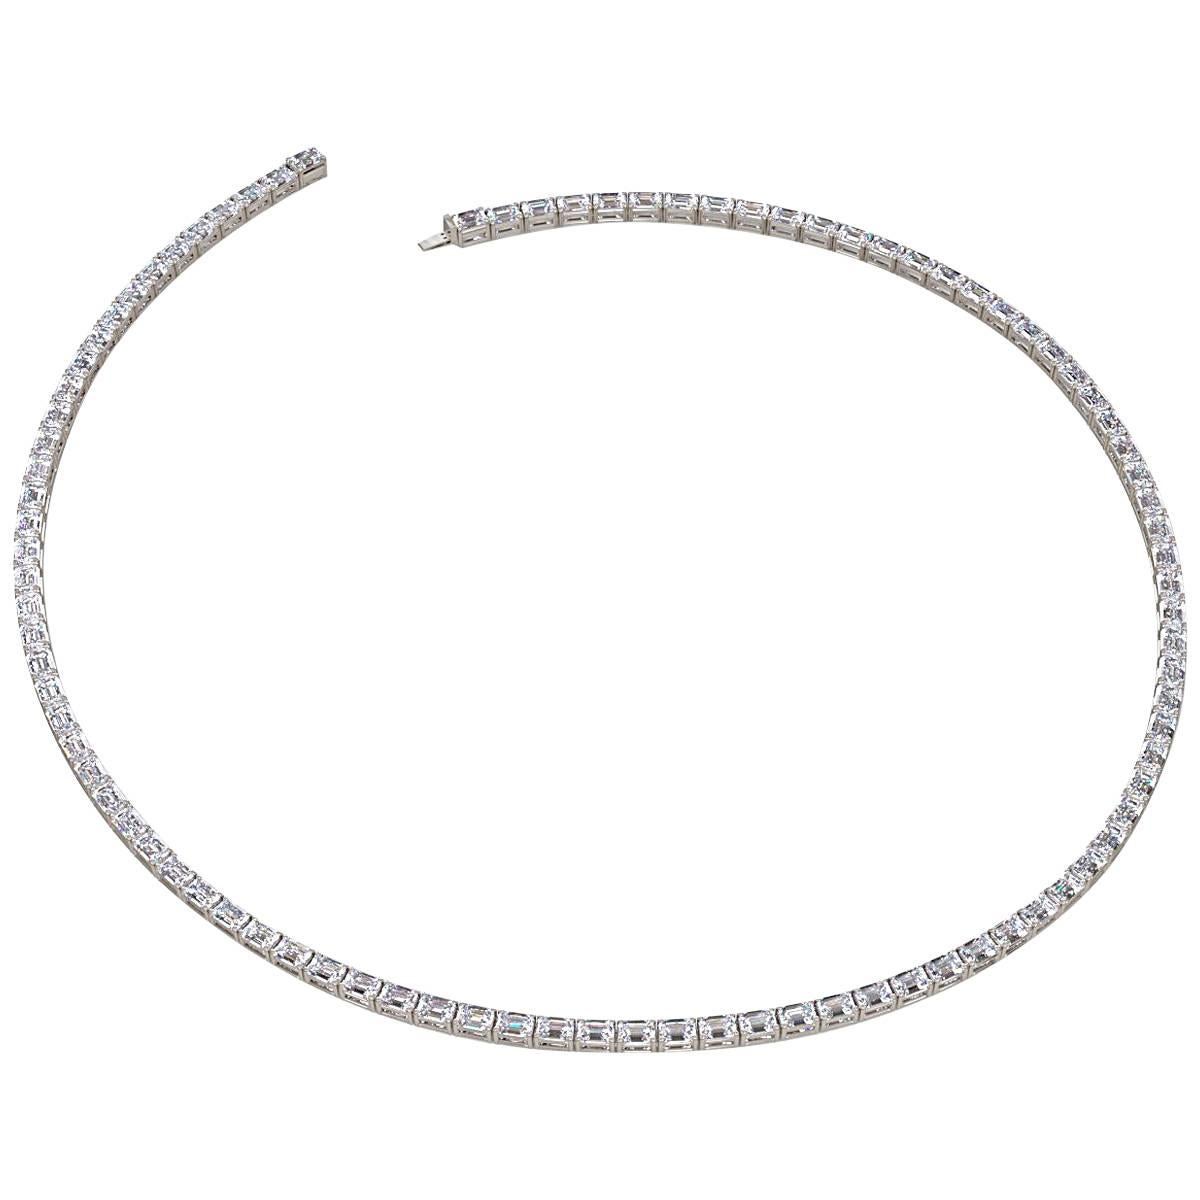 Emilio Jewelry Gia Certified 30.00 Carat Emerald Cut Diamond Necklace For Sale